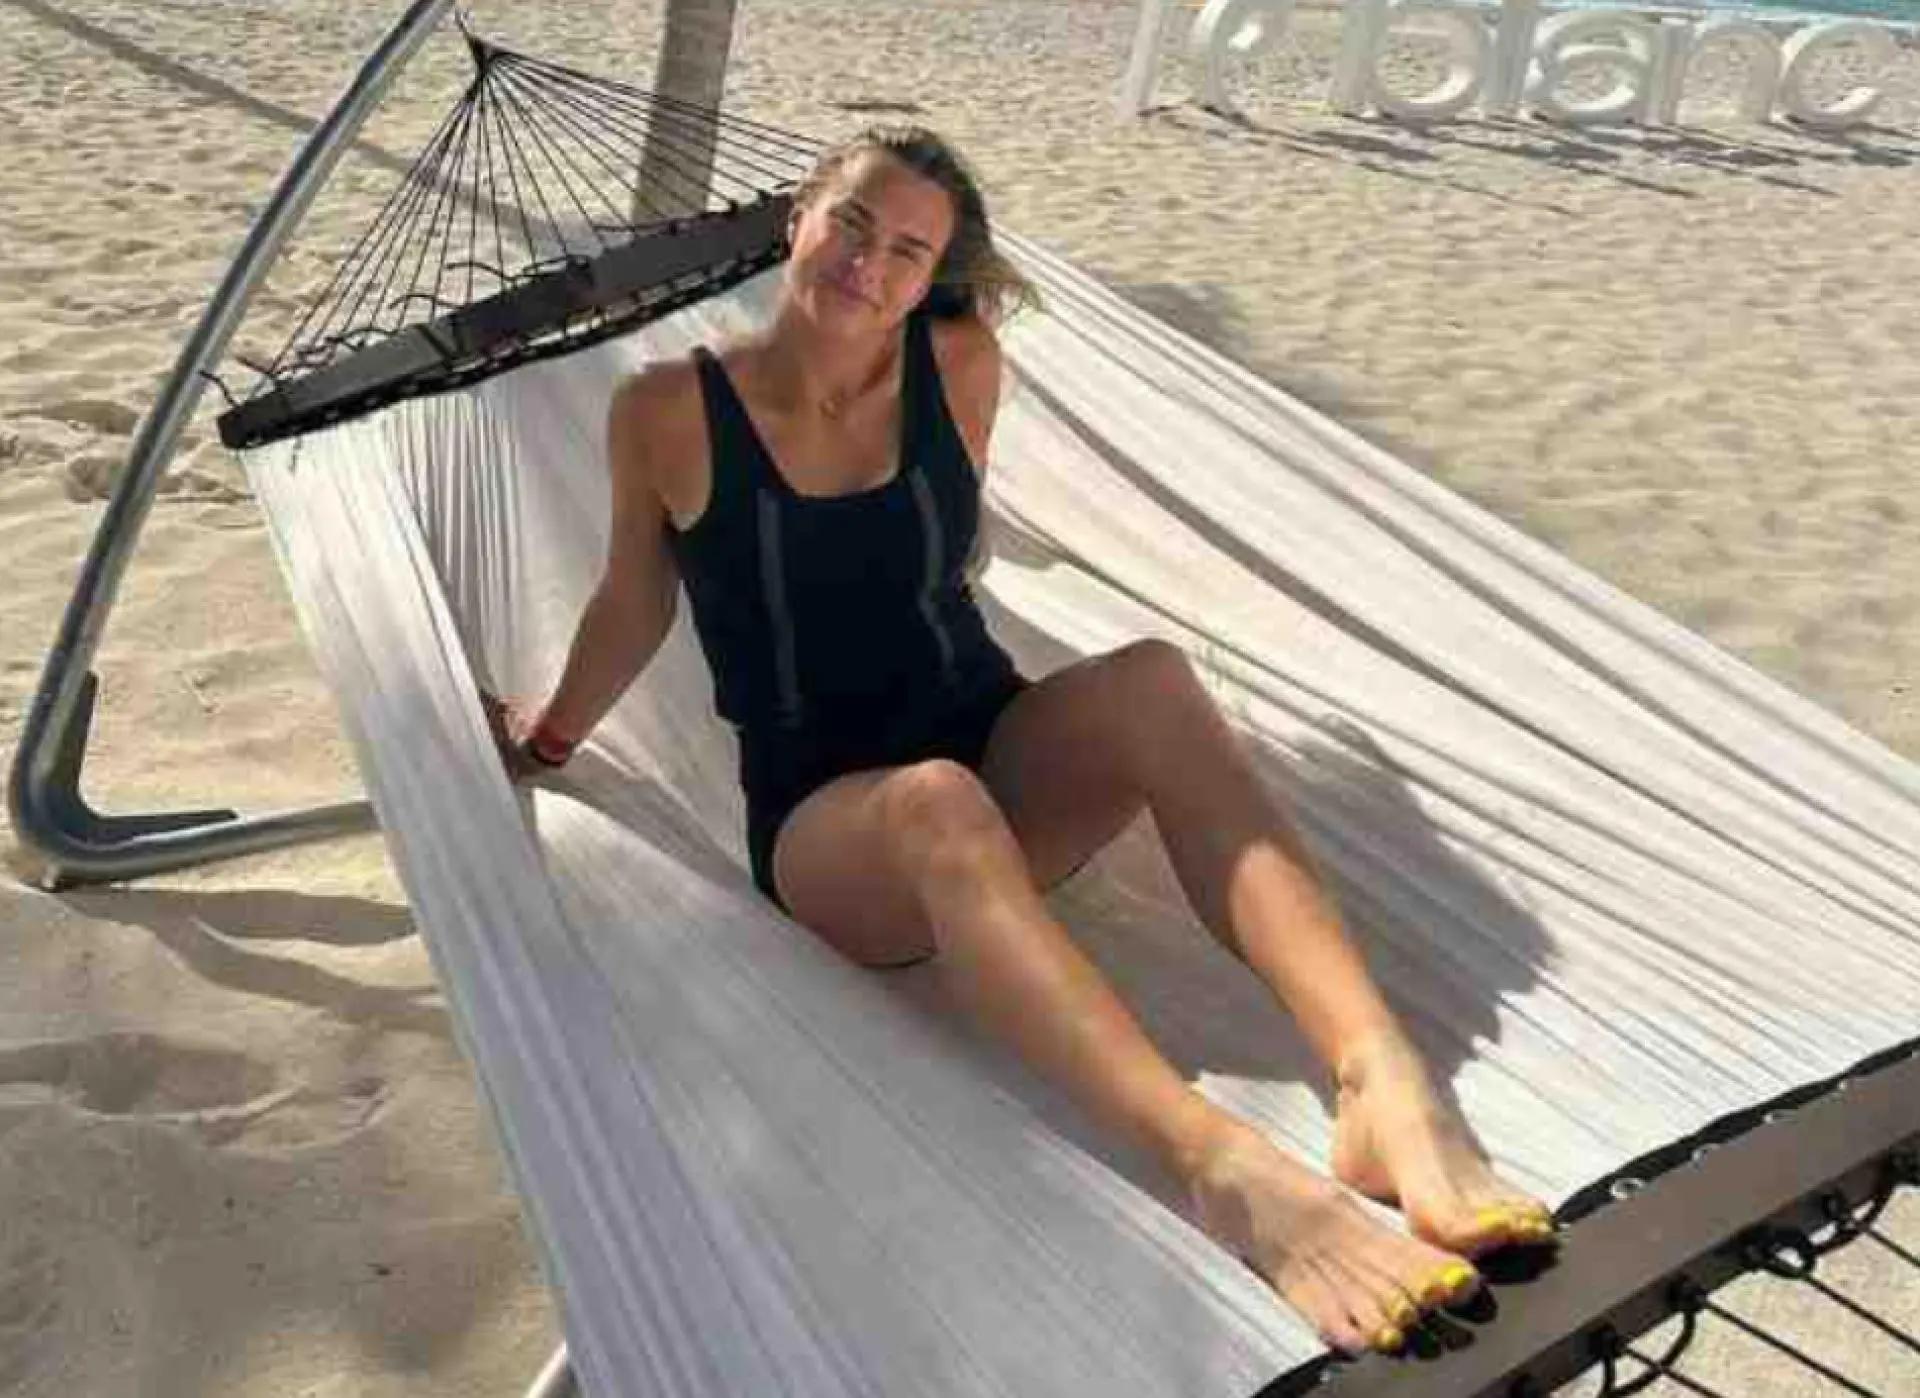 aryna sabalenka incanta in vacanza: le foto in spiaggia sono sensazionali